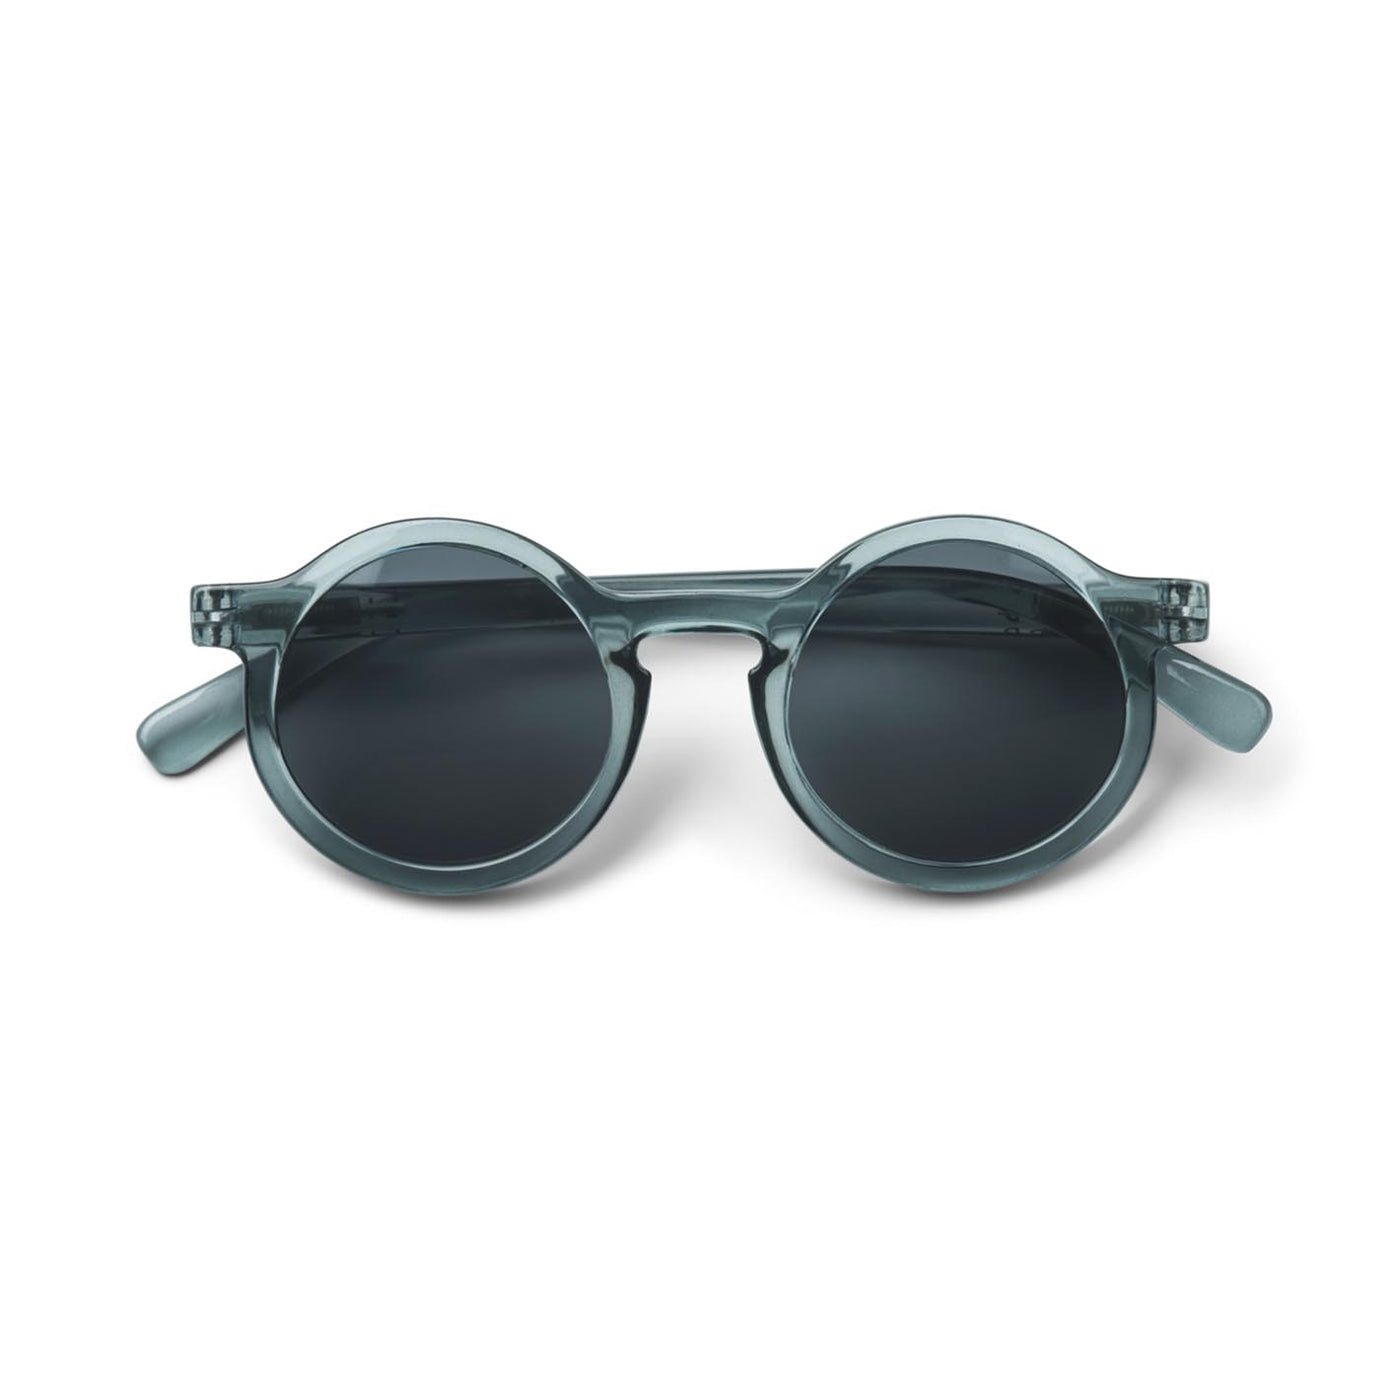 LIEWOOD Sonnenbrille Darla für Kinder, 4-10 Jahre, transparent blau